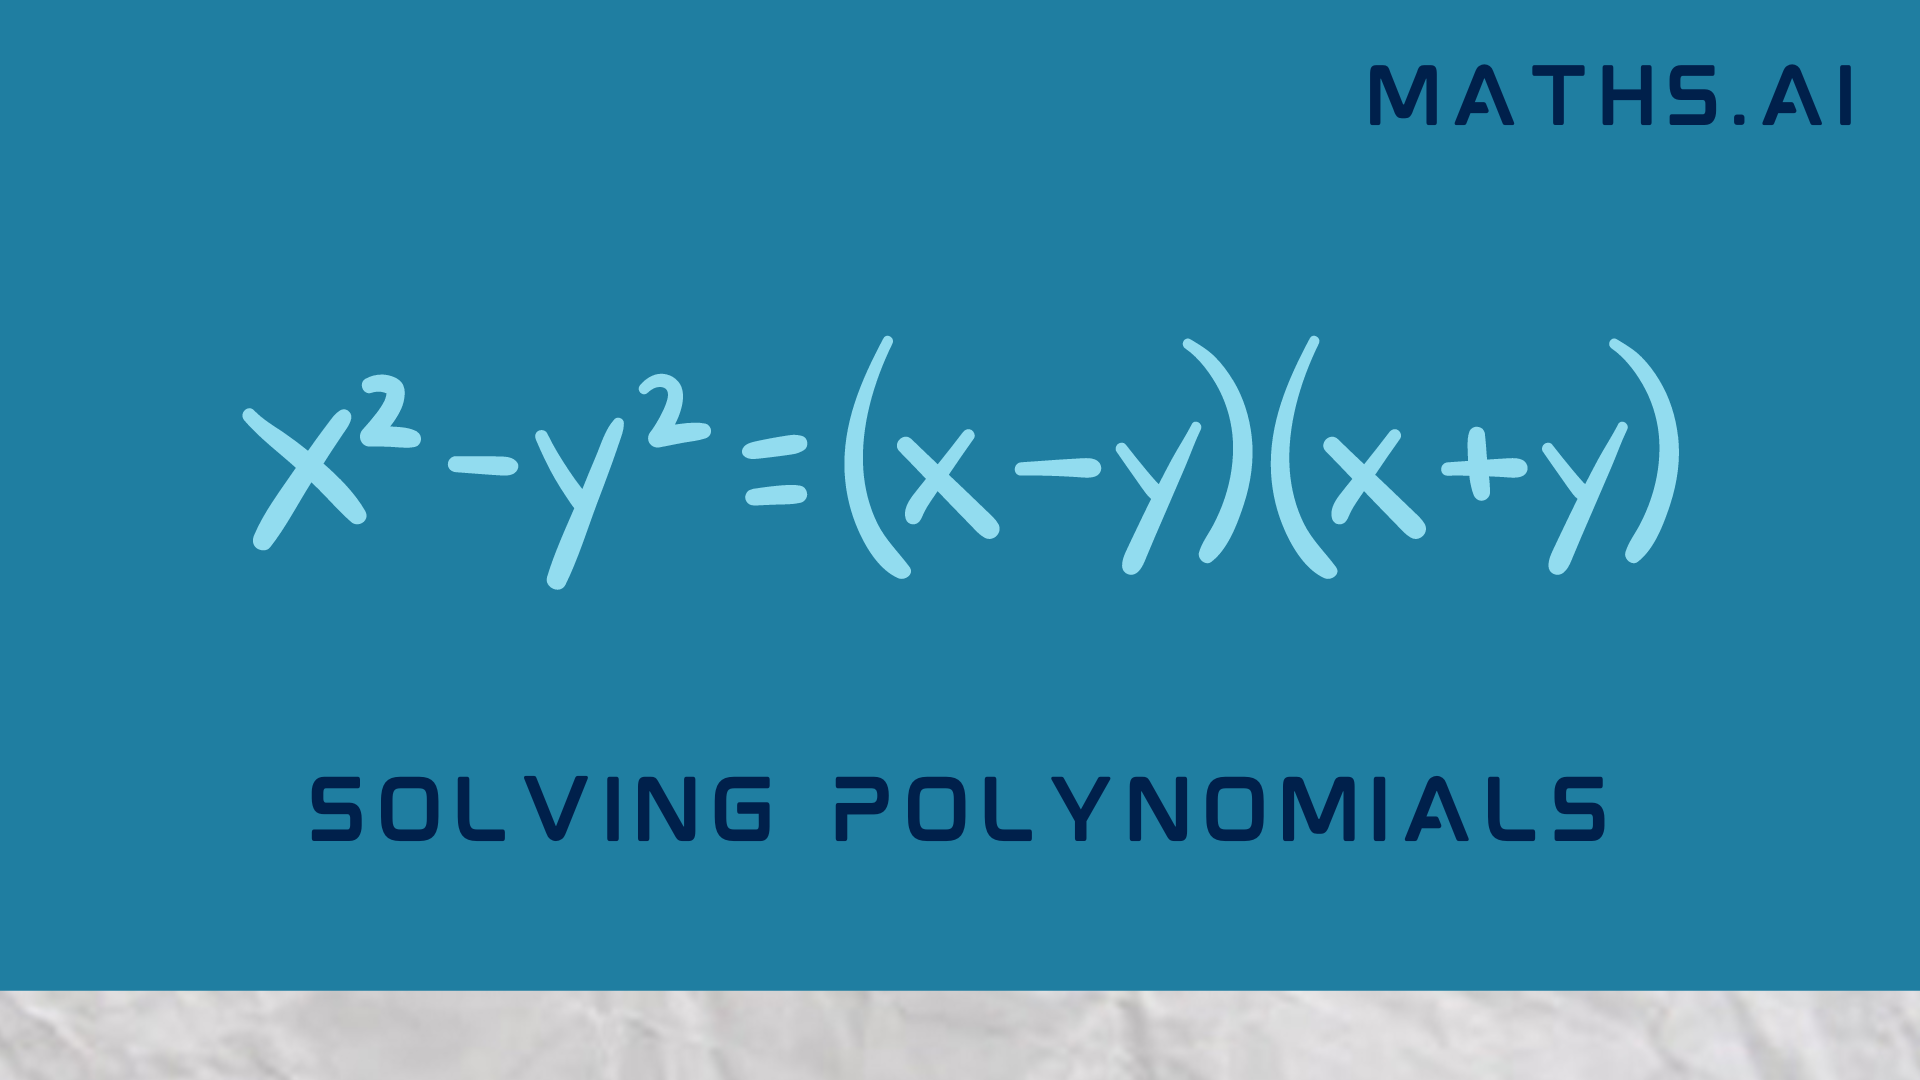 Solving Polynomials